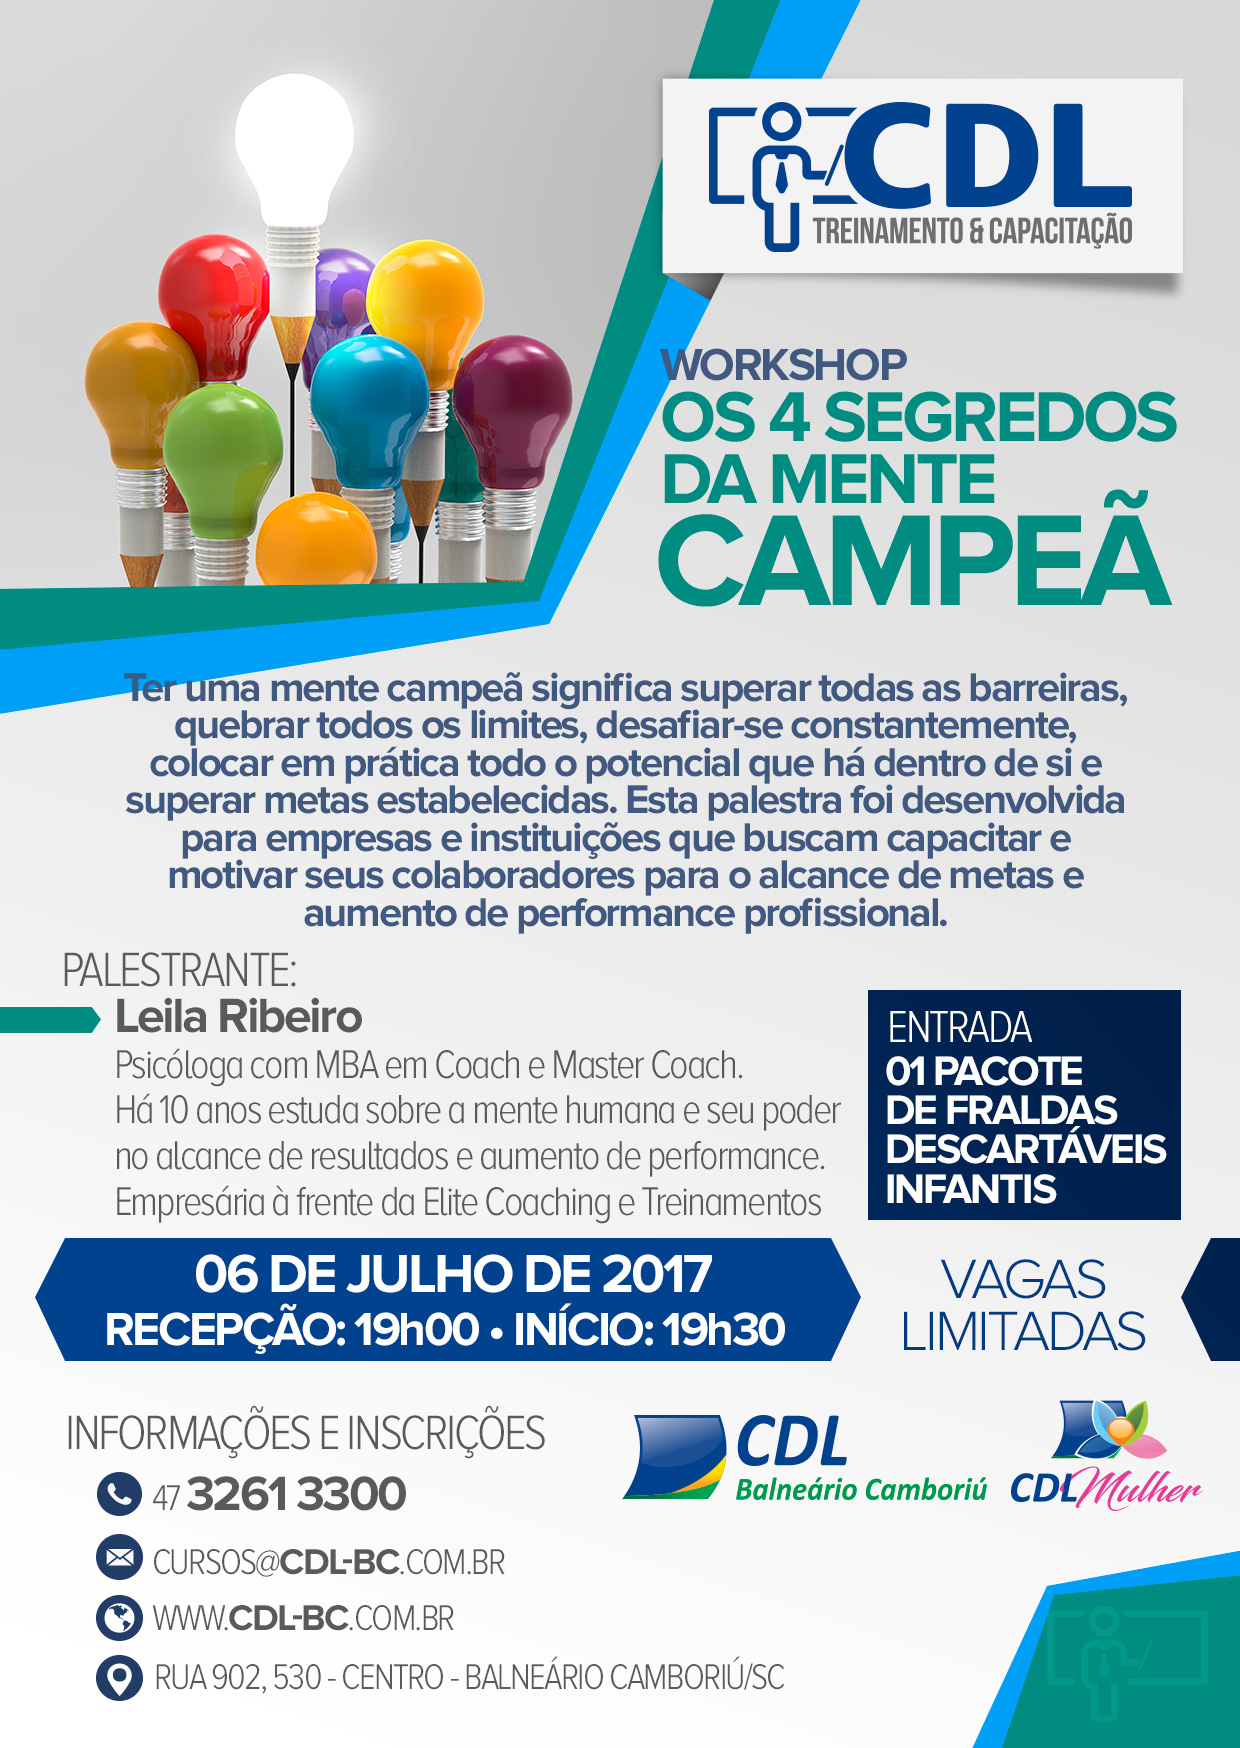 CDL Mulher promove workshop ‘“Os 4 Segredos da Mente Campeã’ com a psicóloga e master coach Leila Ribeiro